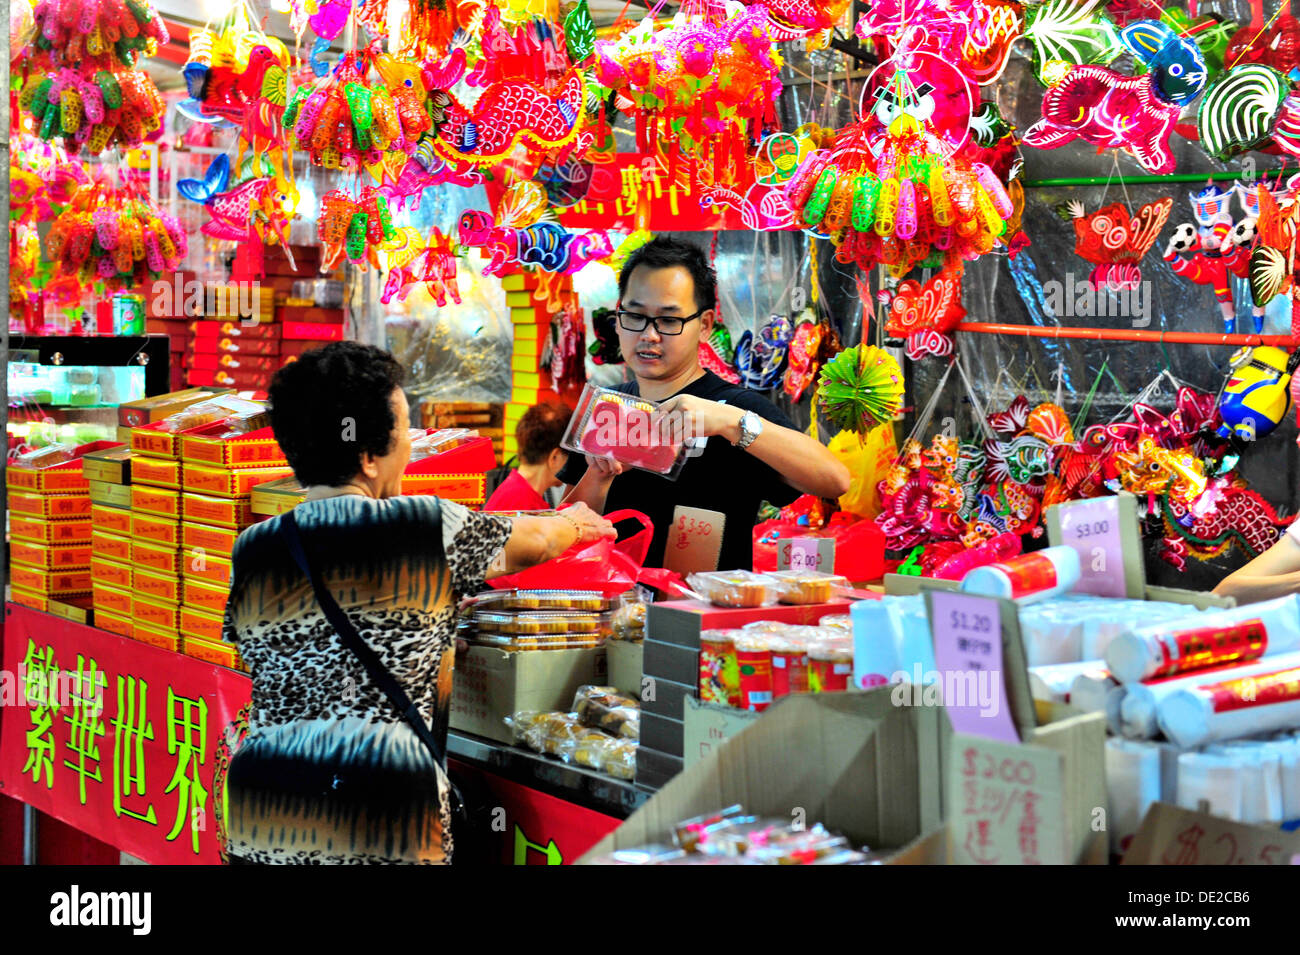 Célébrations de la Fête de Chinatown à Singapour - Bazar de la rue de fête Banque D'Images